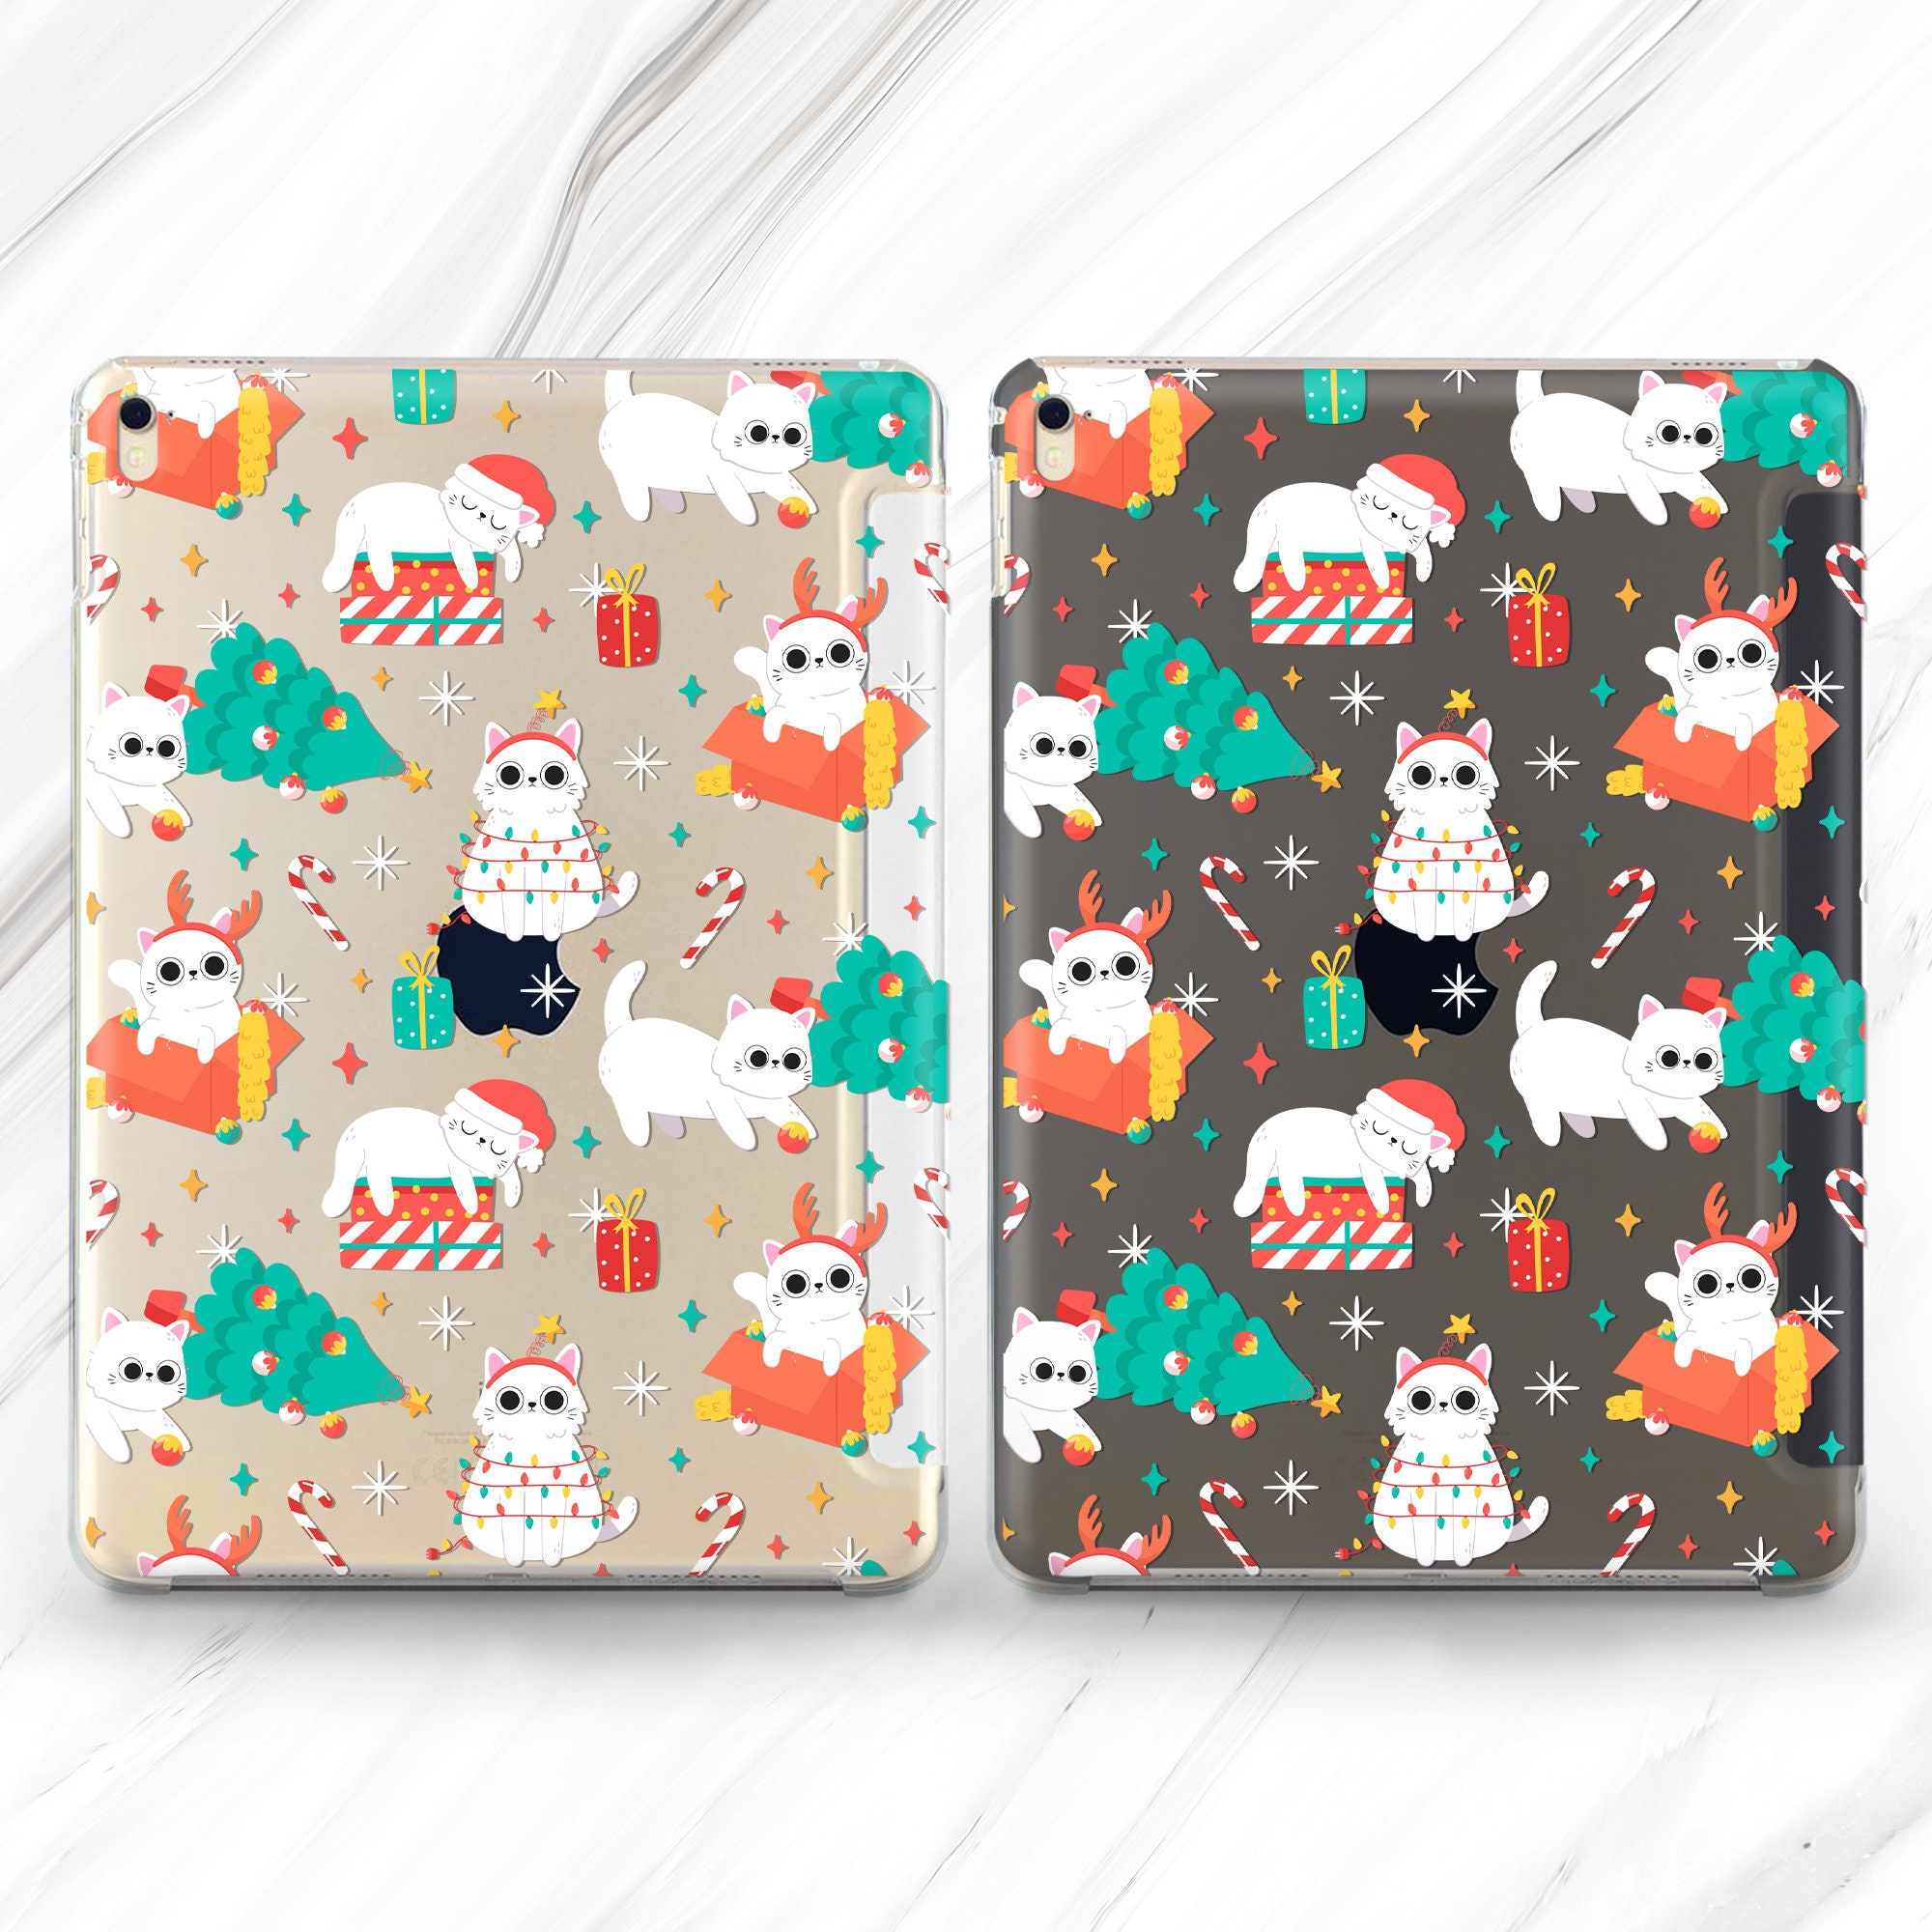 Christmas Cat iPad Pro 12.9 2020 Case Cute Kitten iPad Mini 5 Etsy